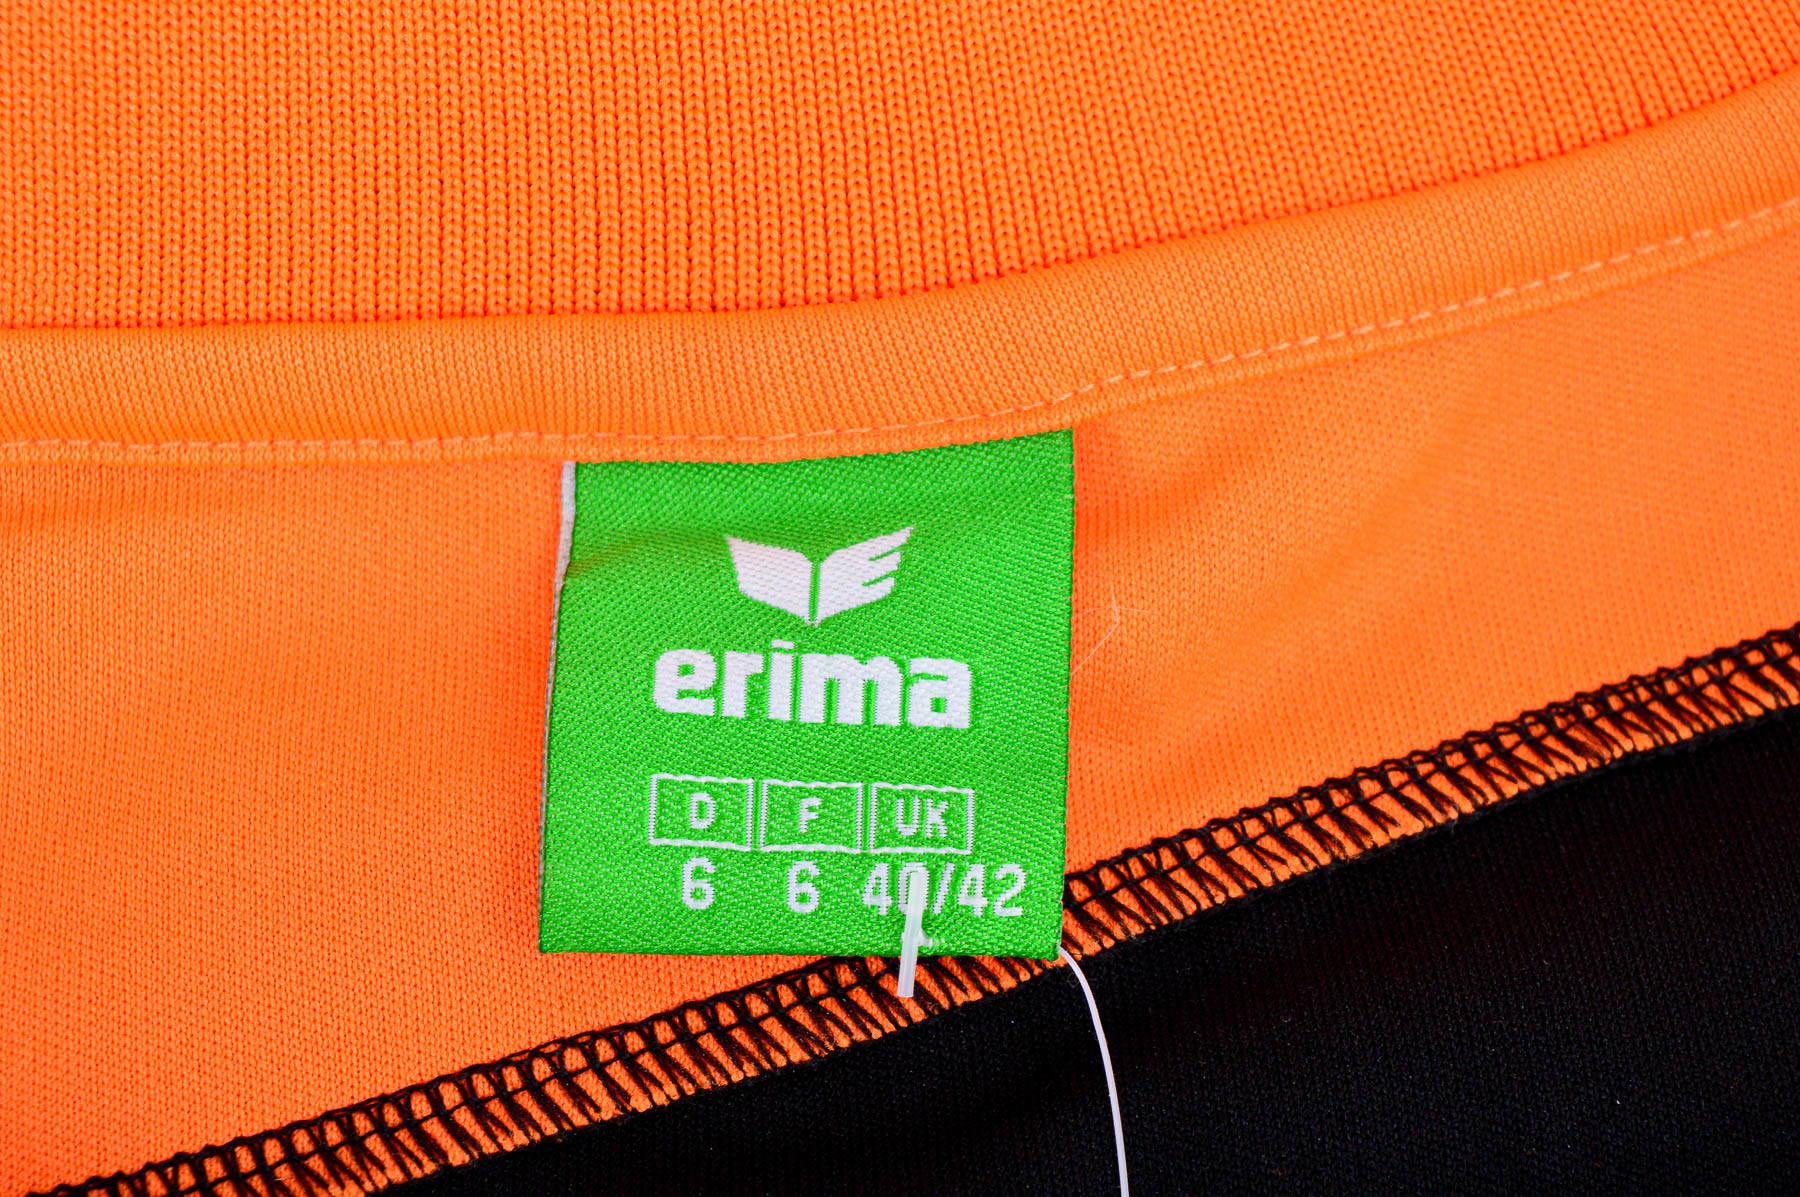 Ανδρικό μπλουζάκι - Erima - 2